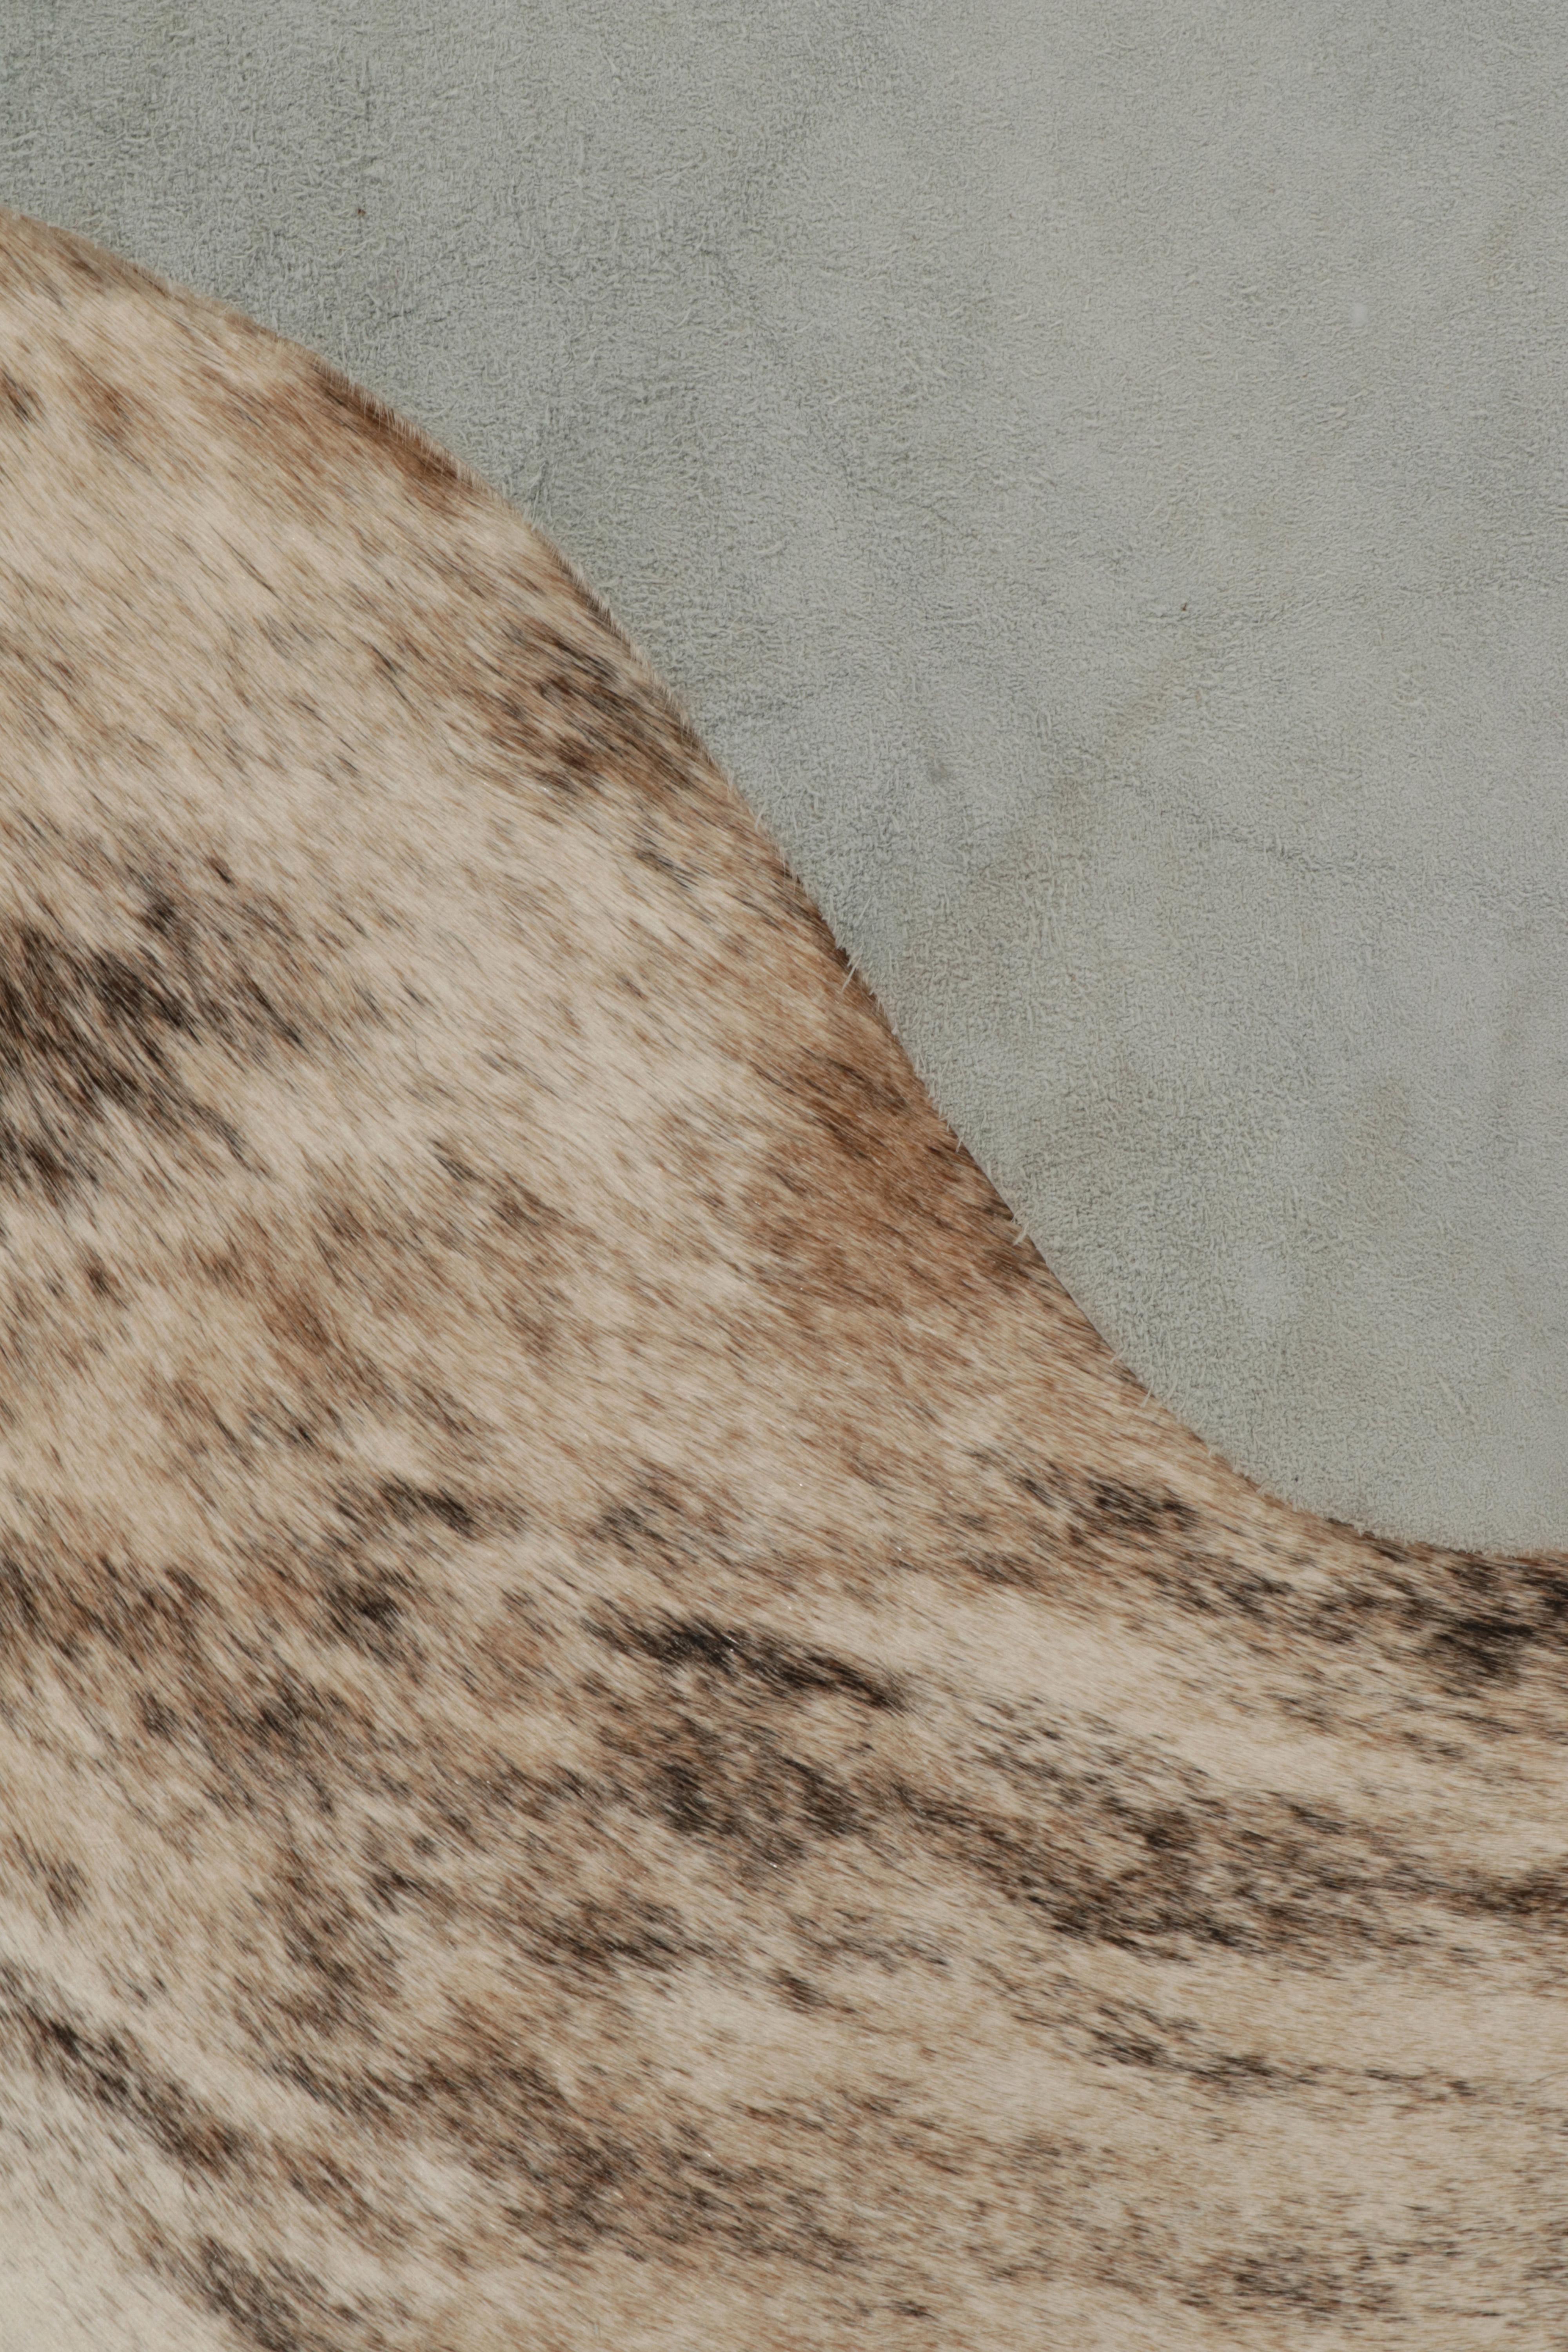 Fur Rug & Kilim’s Contemporary Cowhide Rug in Beige-Brown